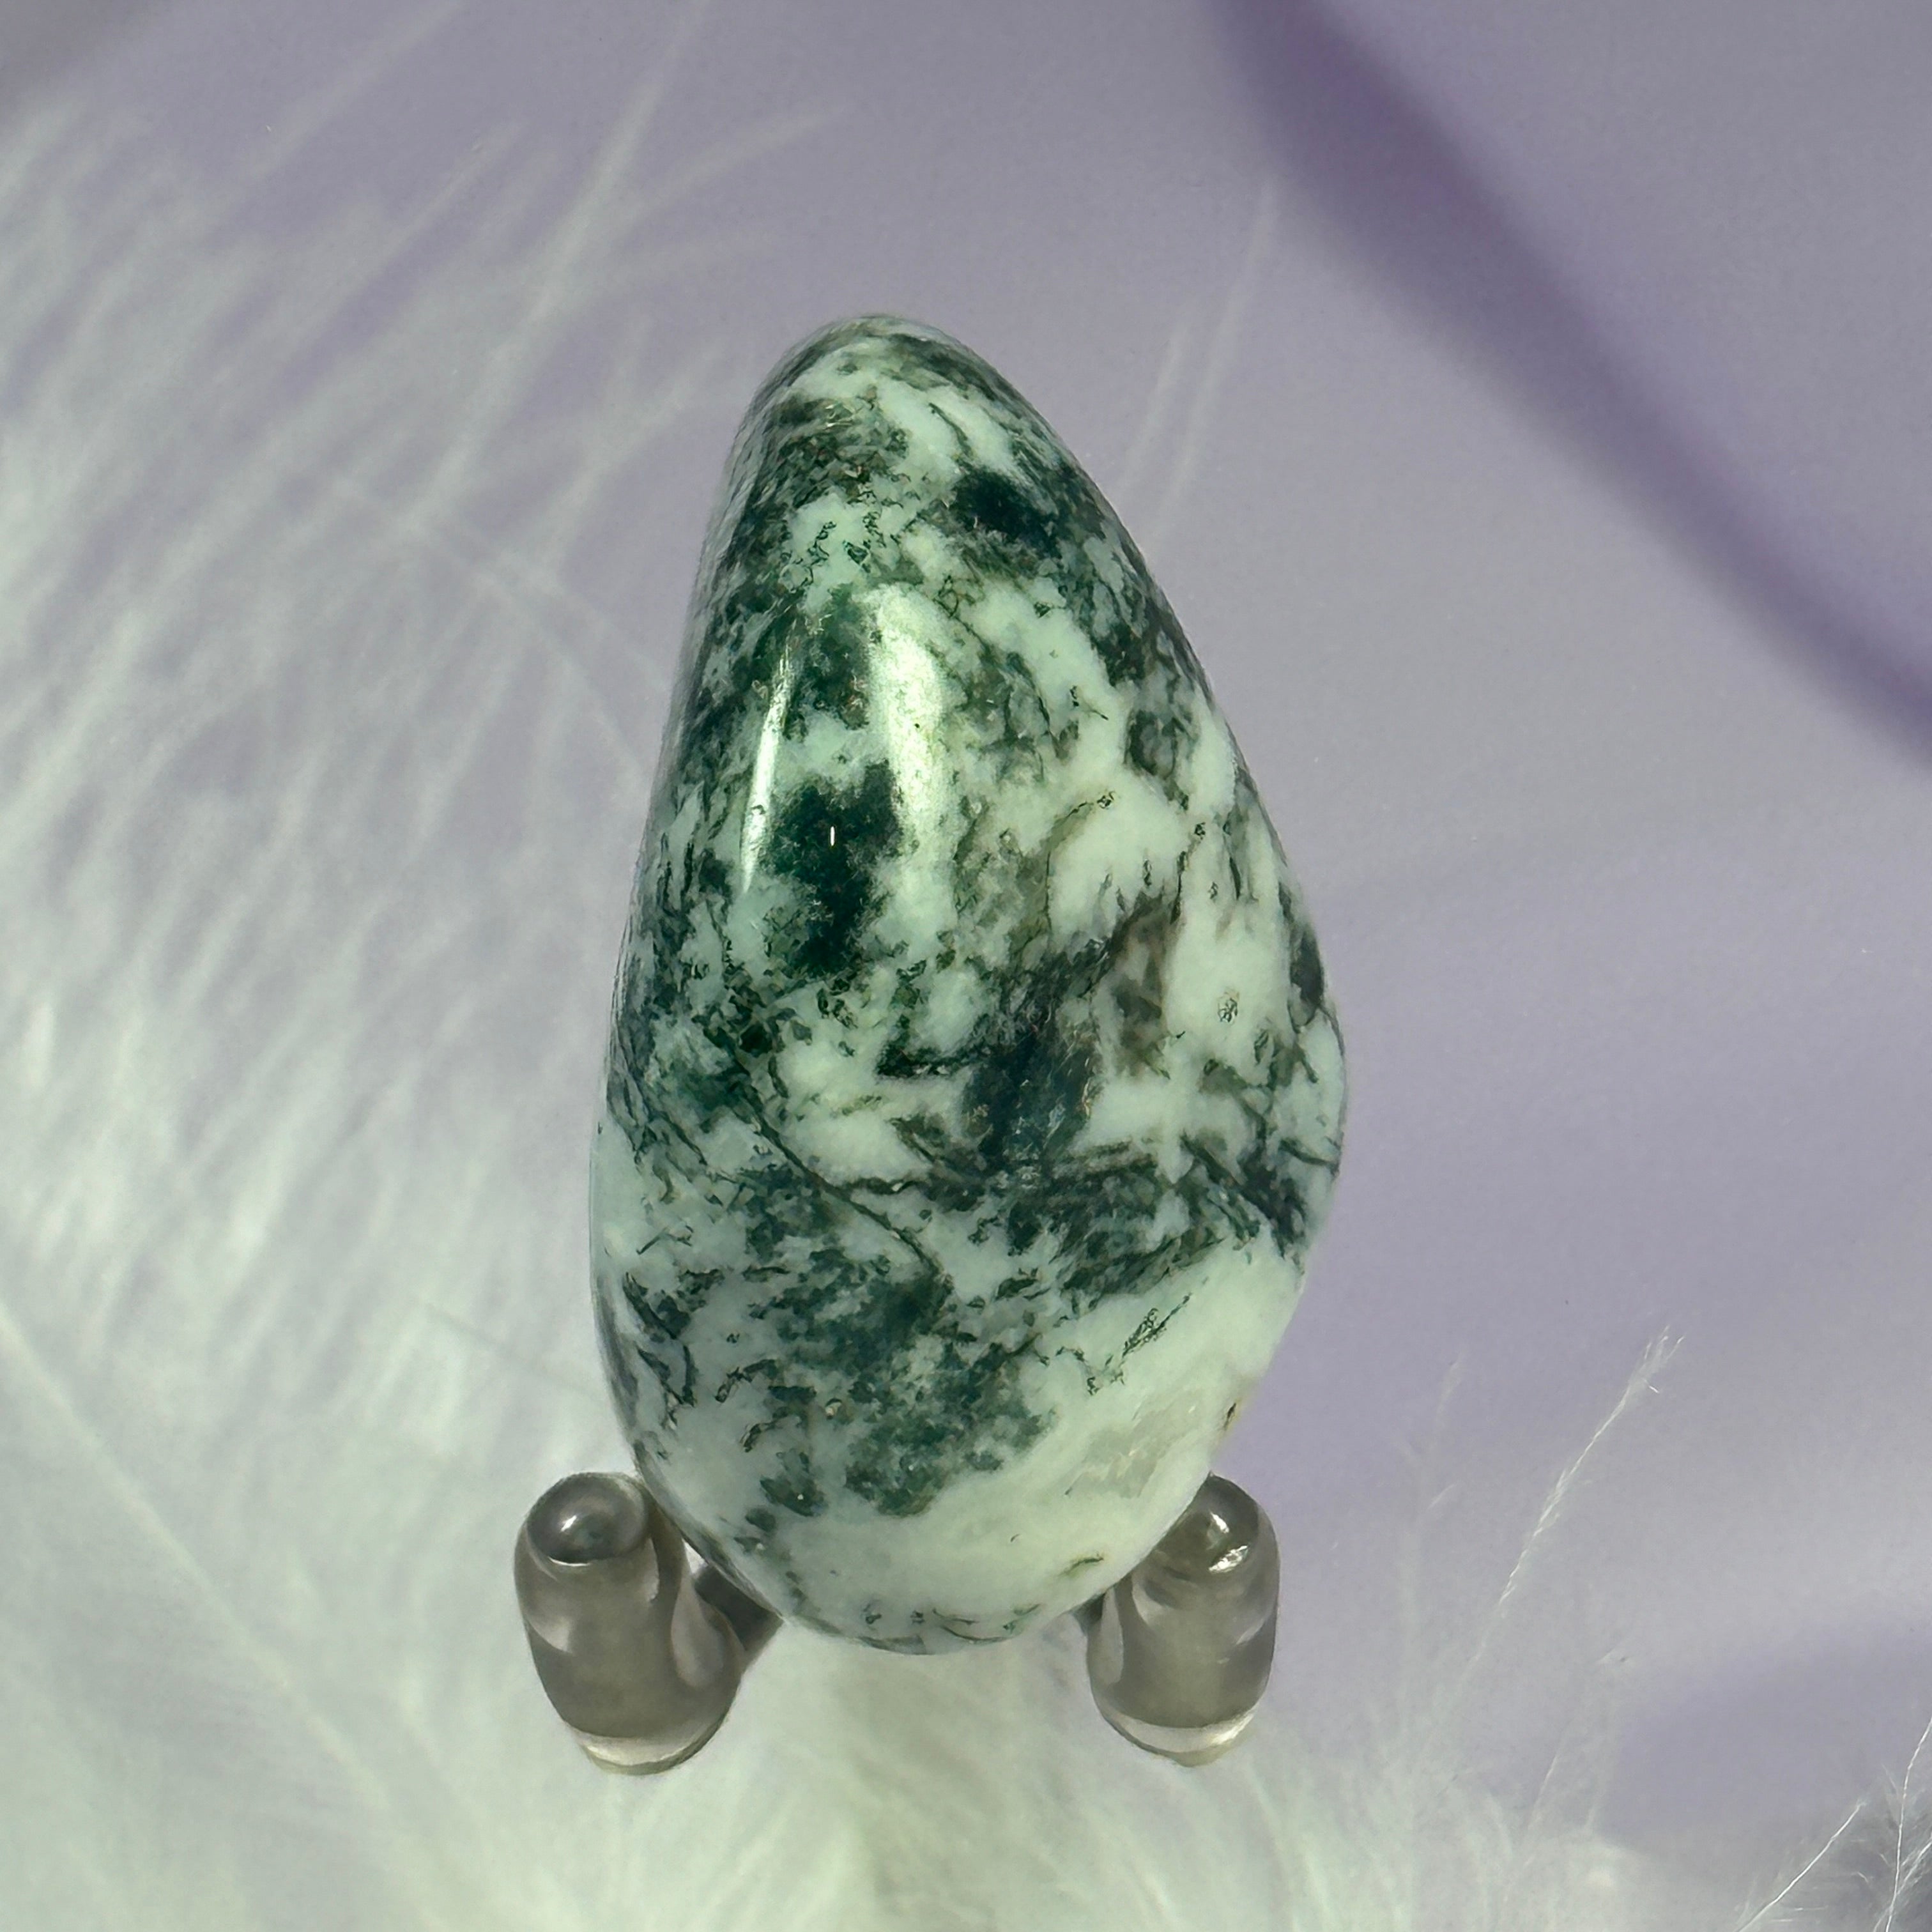 Beautiful Tree Agate crystal tumble stone 16.4g SN43547